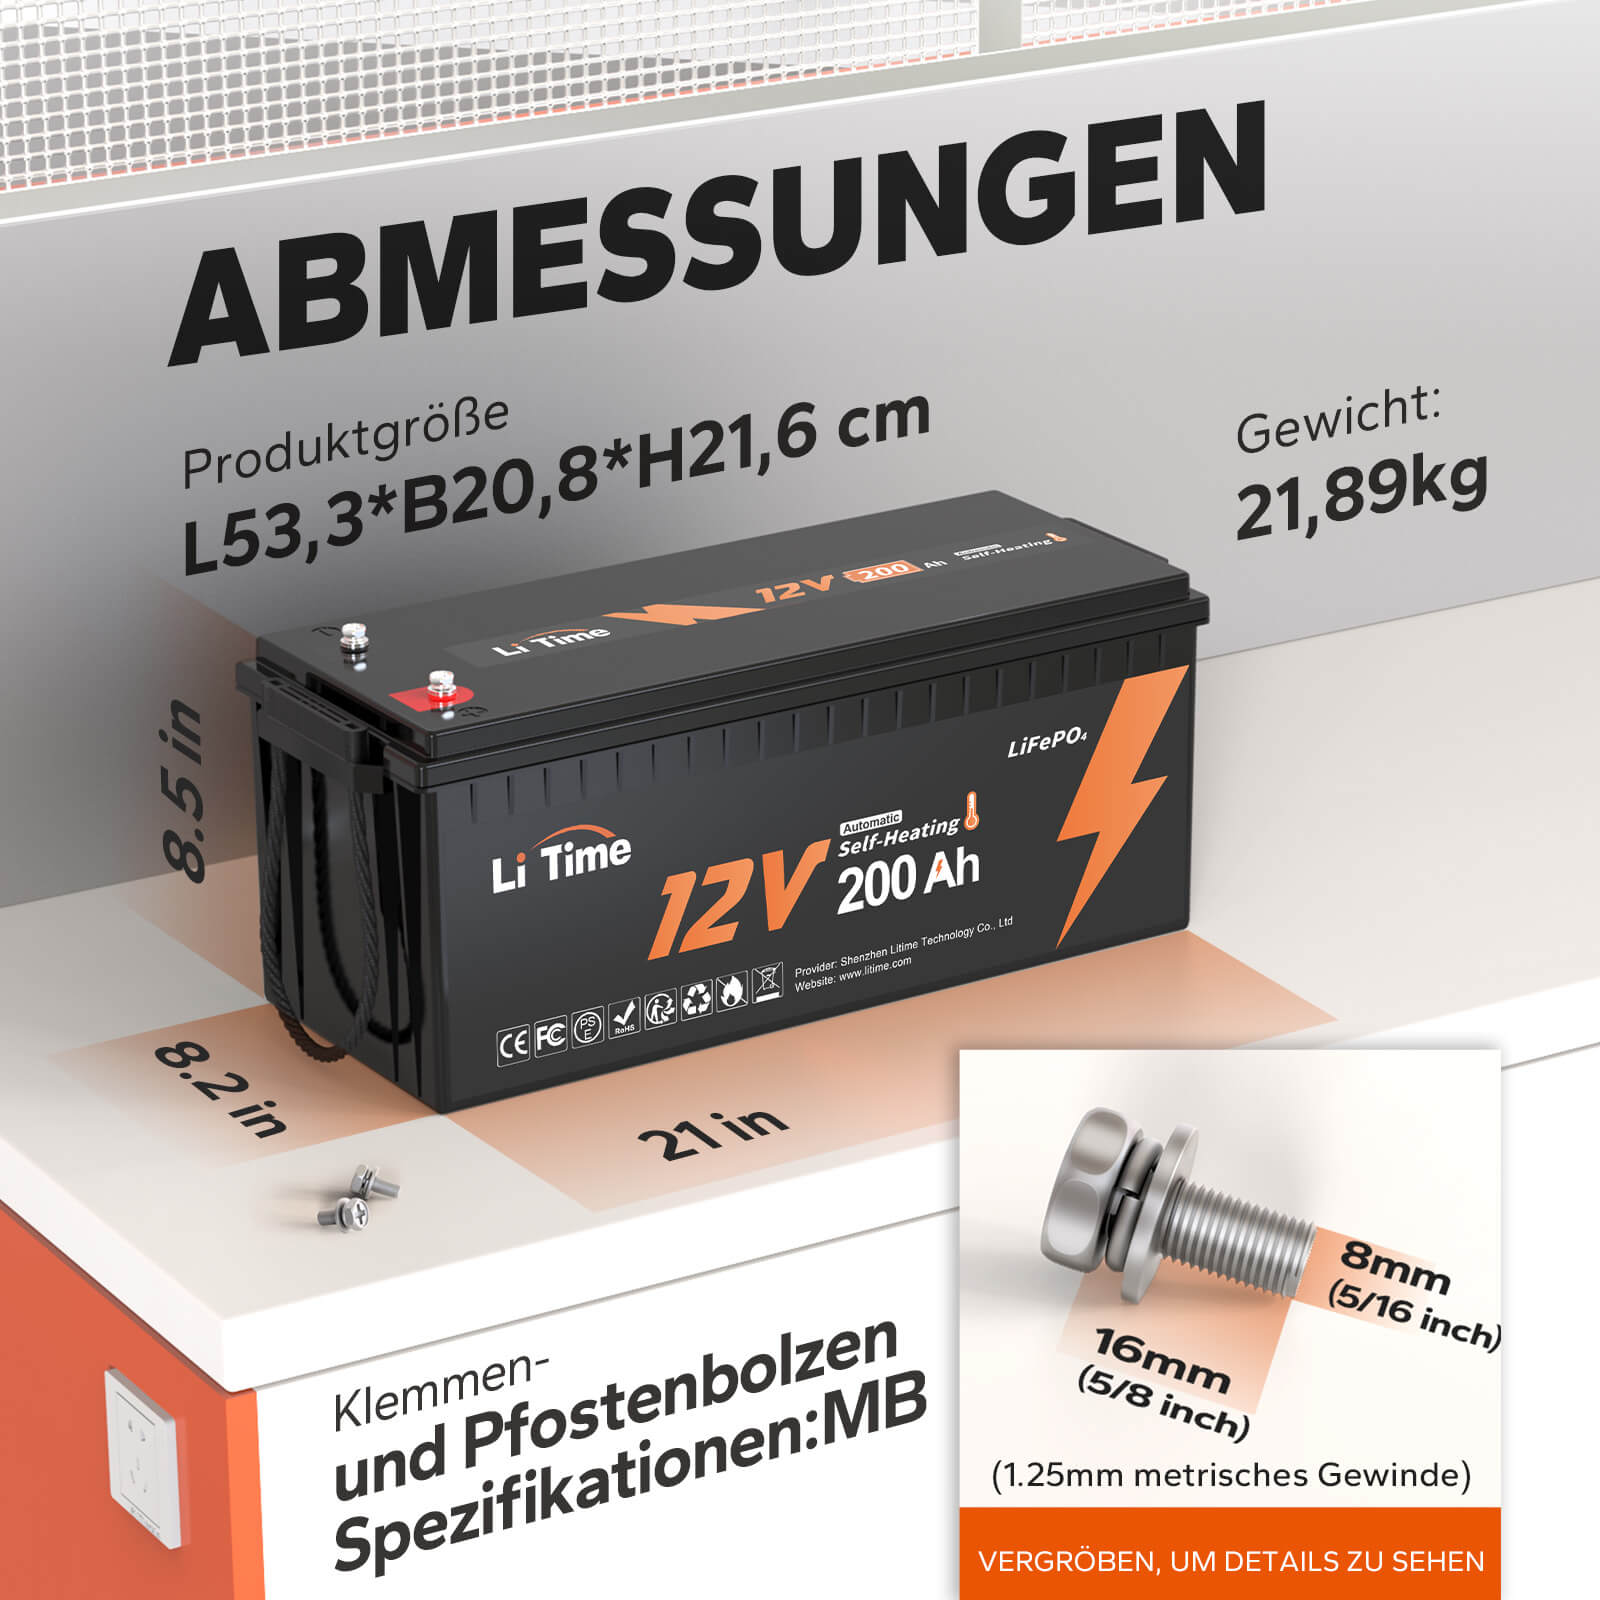 LiTime 12V200Ah LiFePO4 selbstheizende Batterie ist ein Upgrade mit eingebauten selbstheizenden Pads ermöglichen das Laden bei -4°F Umgebungstemperatur. 